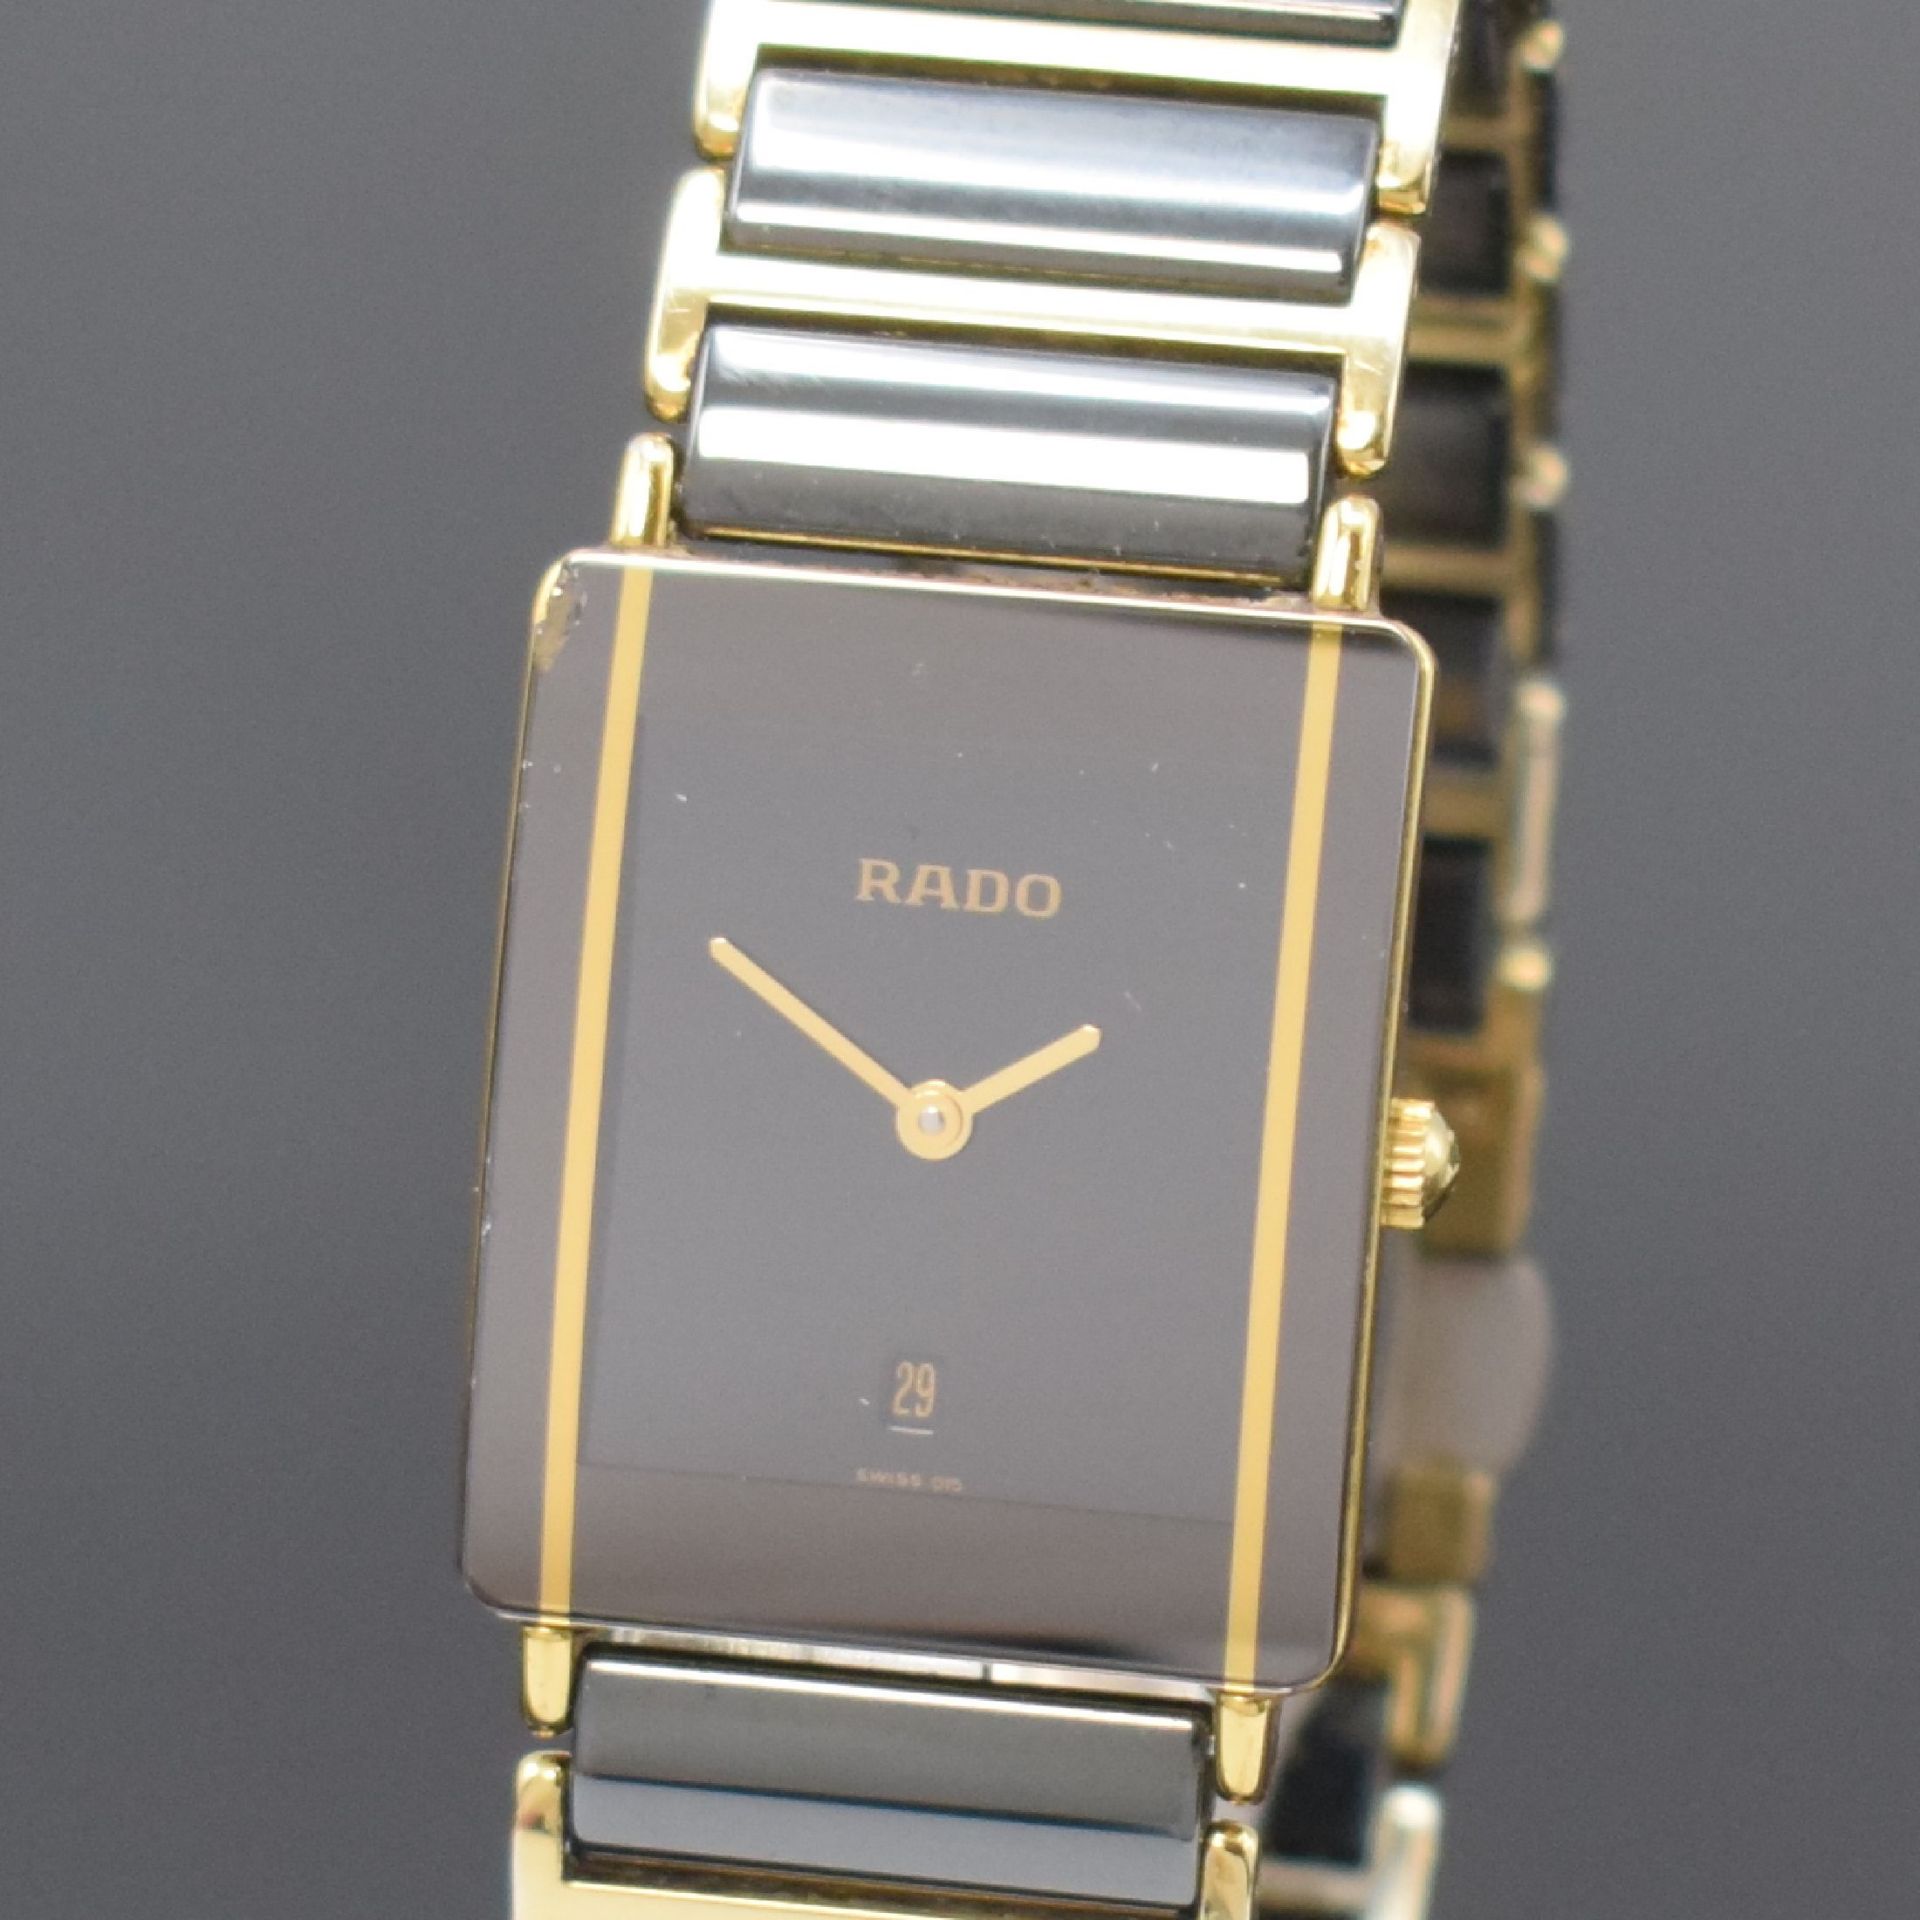 RADO Diastar Armbanduhr Referenz 160.0381.3, Schweiz um - Image 2 of 5